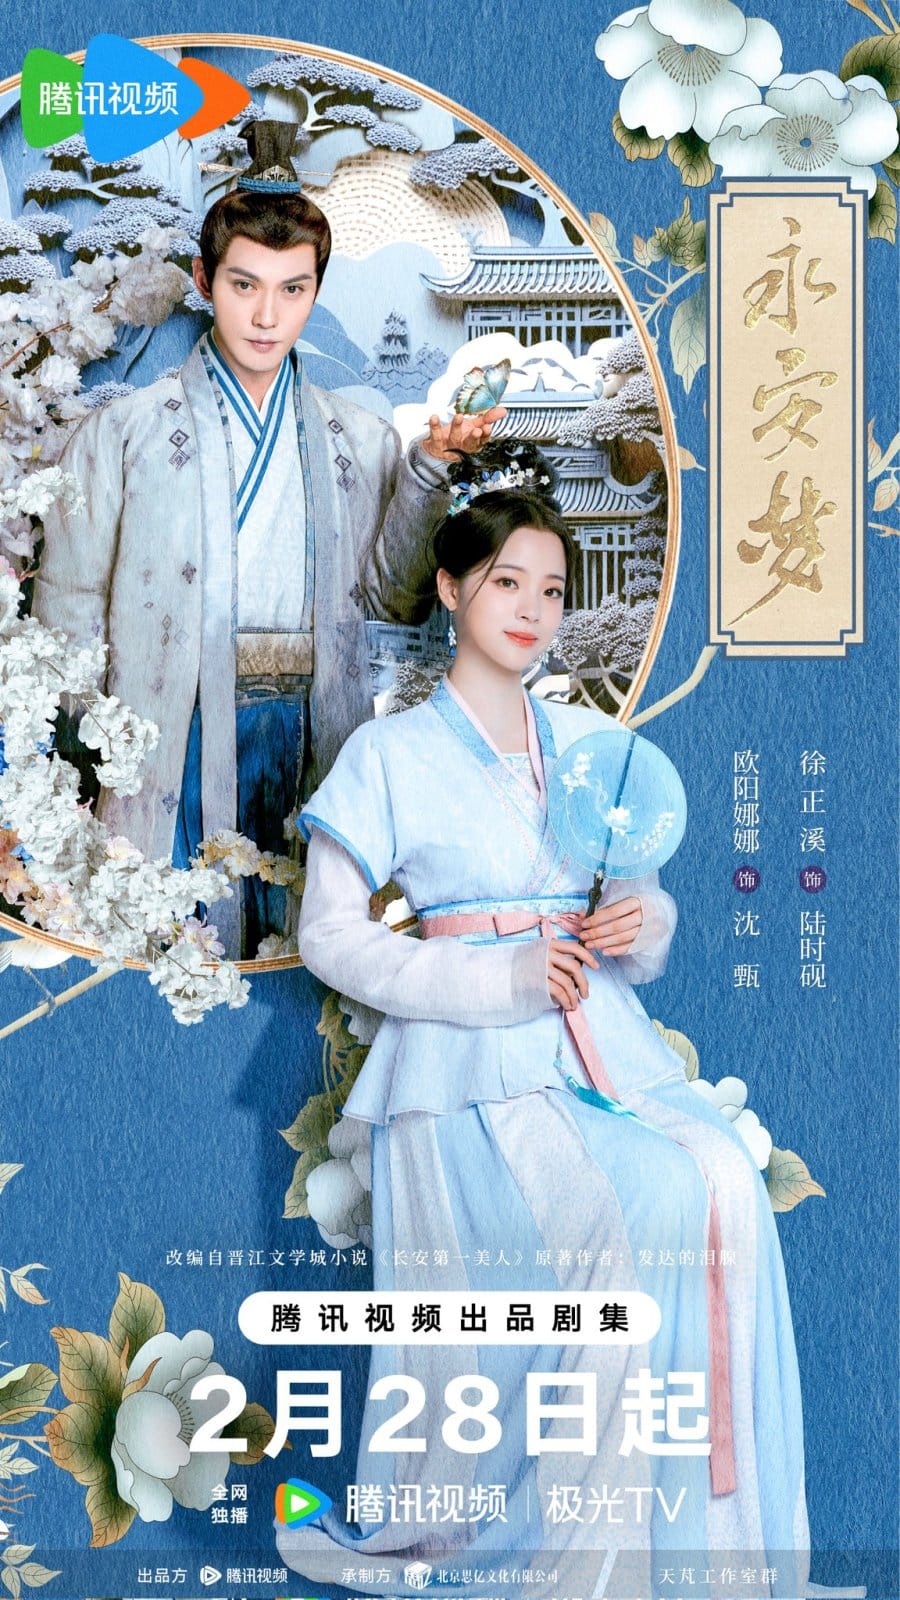 Премьера дорамы с Сюй Чжэн Си и Оуян Наной "Мечта Юнъань"